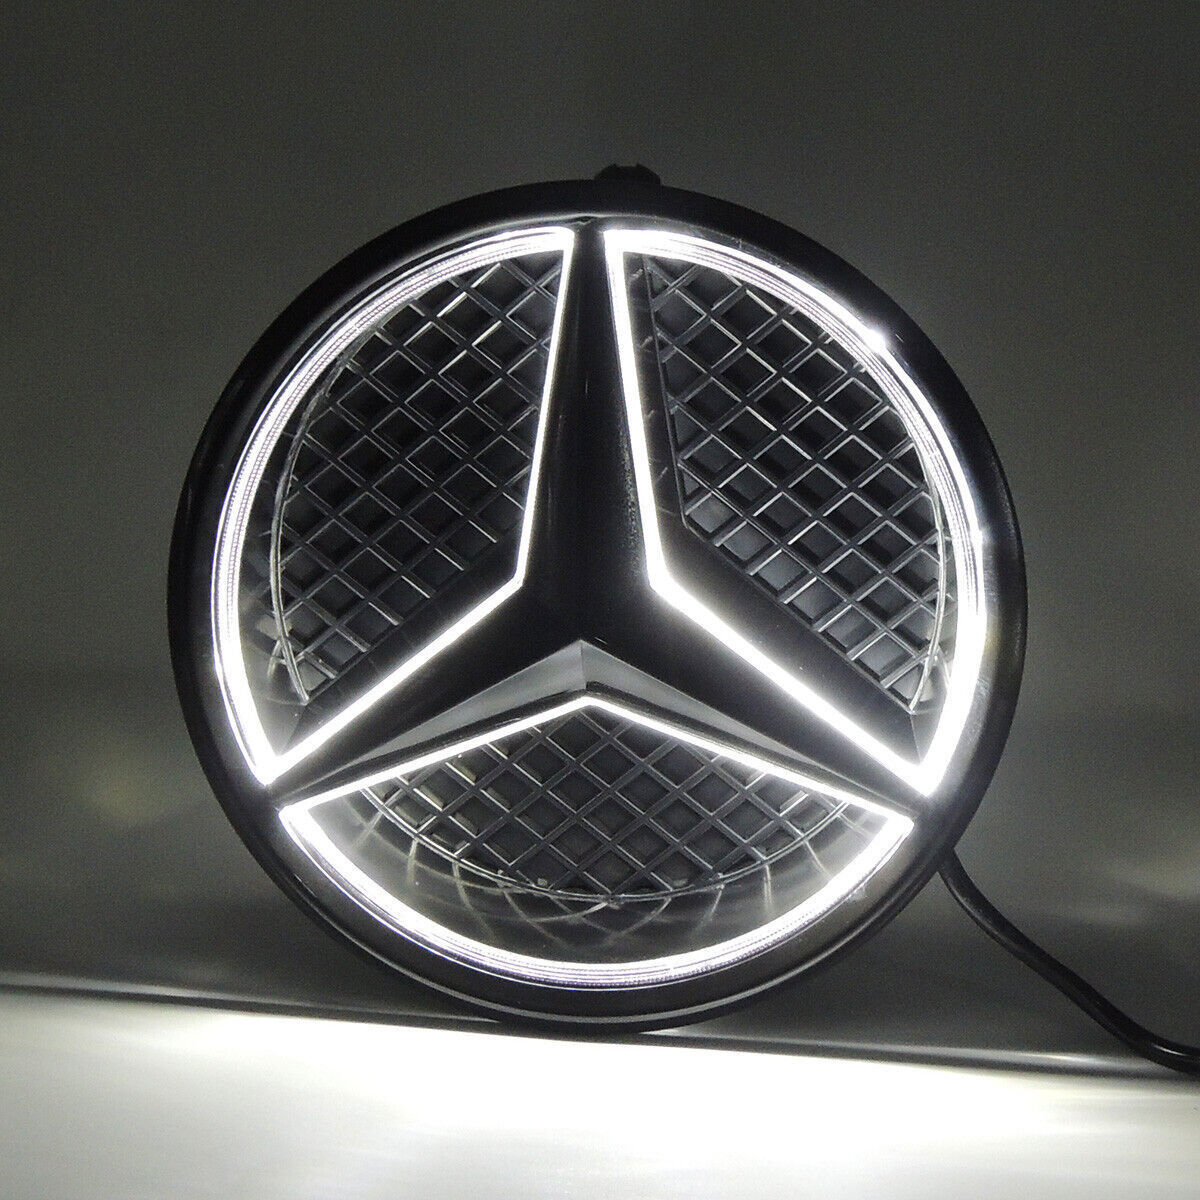 For Mercedes Benz LED Emblem Light Car Front Grille Illuminated Logo Star Badge